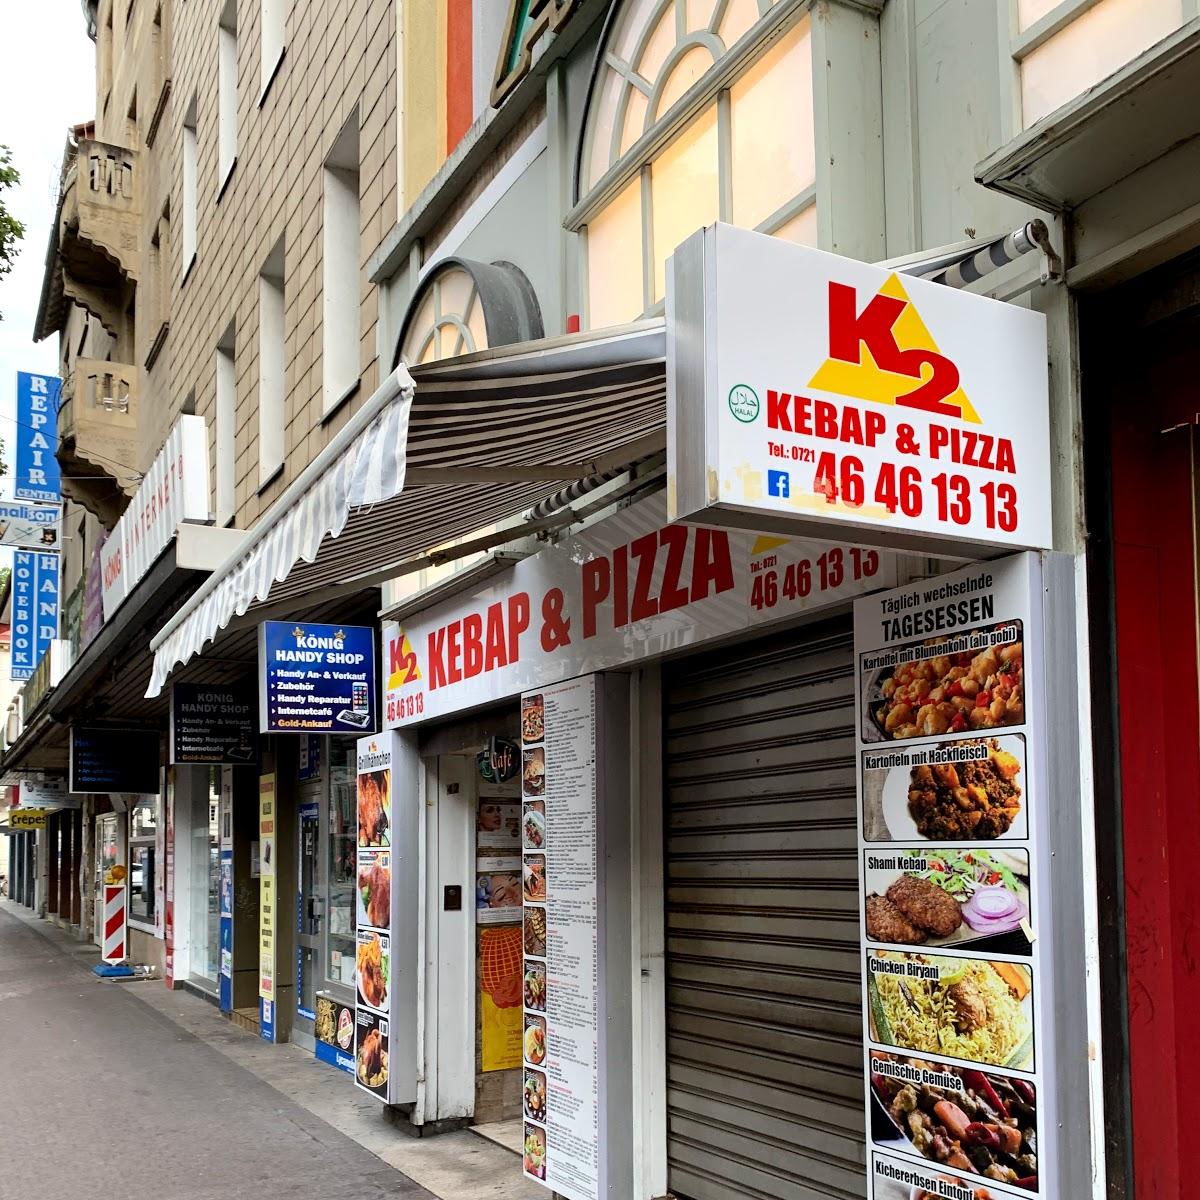 Restaurant "K2 PIZZA & KEBAP" in Karlsruhe